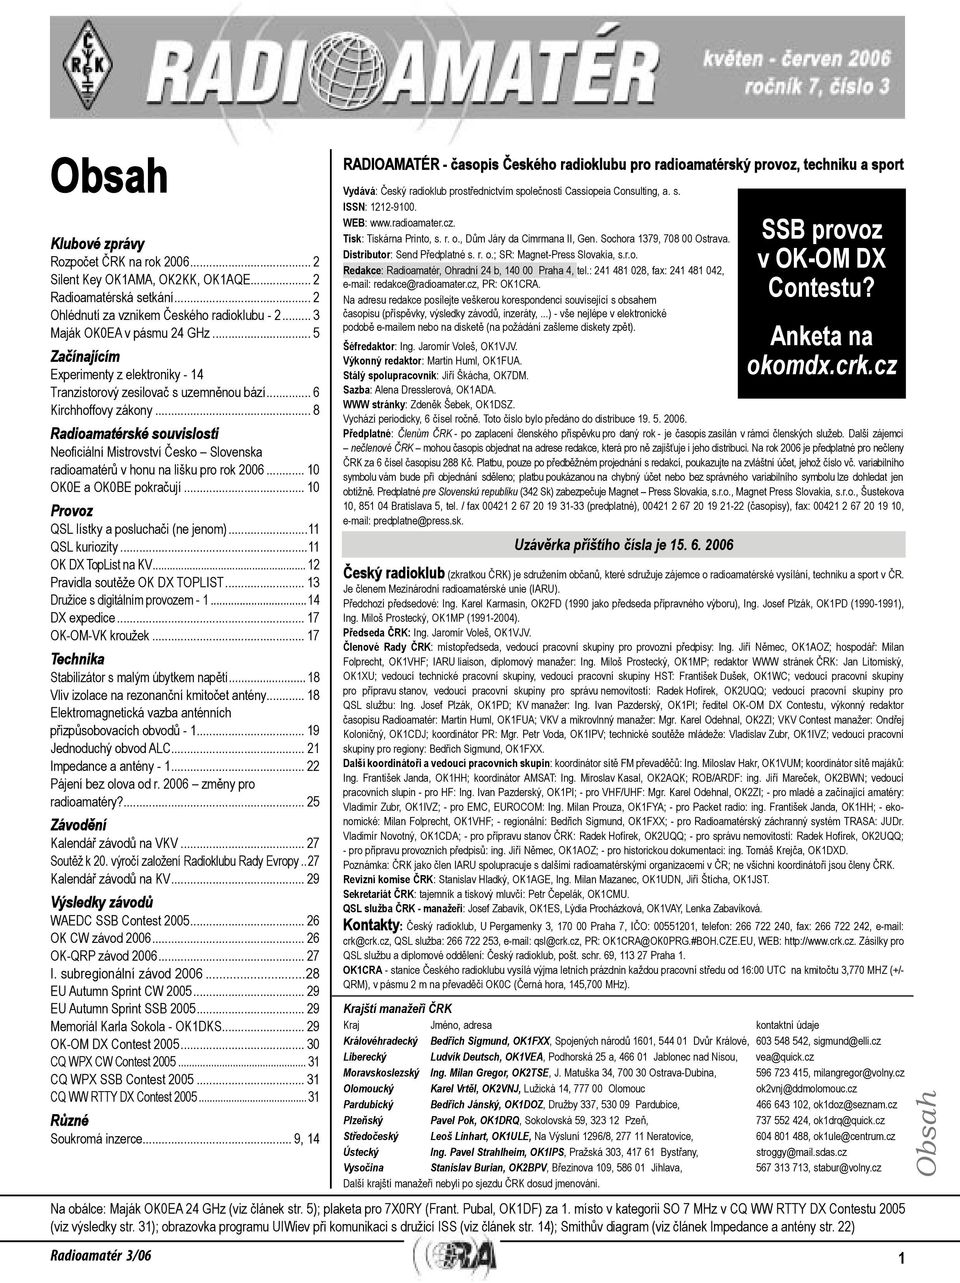 .. 8 Radioamatérské souvislosti NeoÞciální Mistrovství Česko Slovenska radioamatérů v honu na lišku pro rok 2006... 10 OK0E a OK0BE pokračují... 10 Provoz QSL lístky a posluchači (ne jenom).